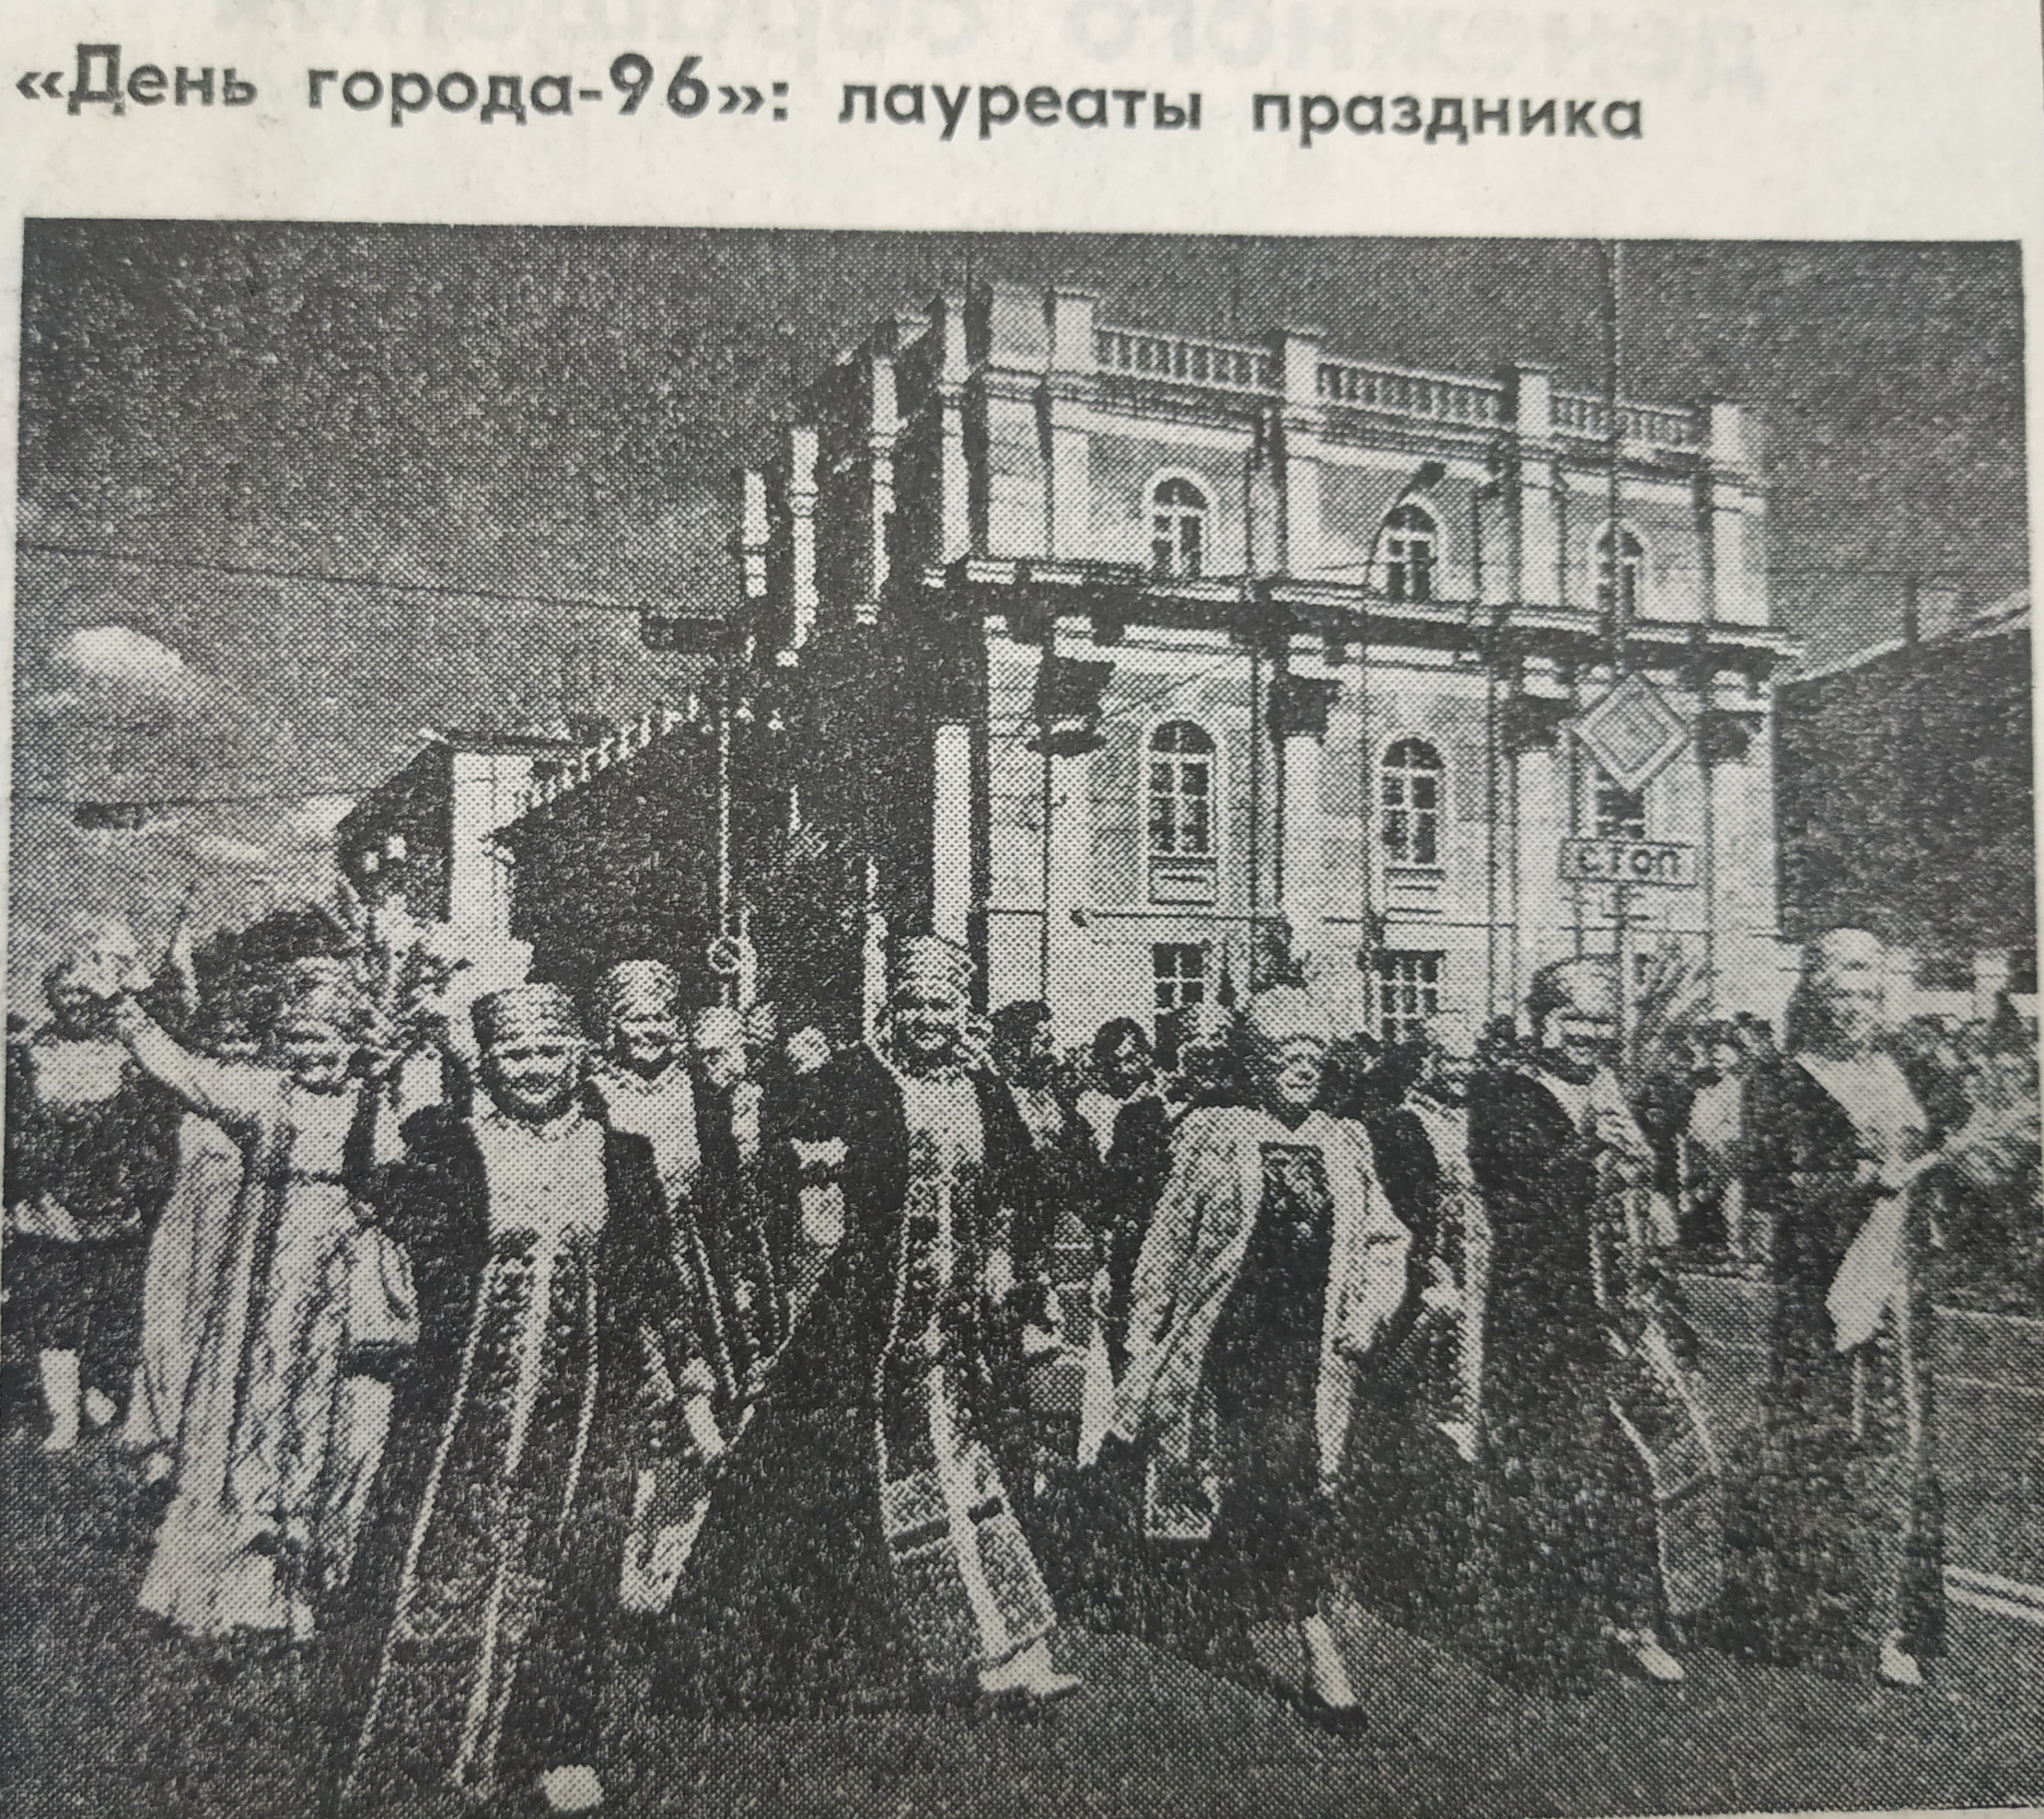 Лауреаты праздника идут по улице Ленина